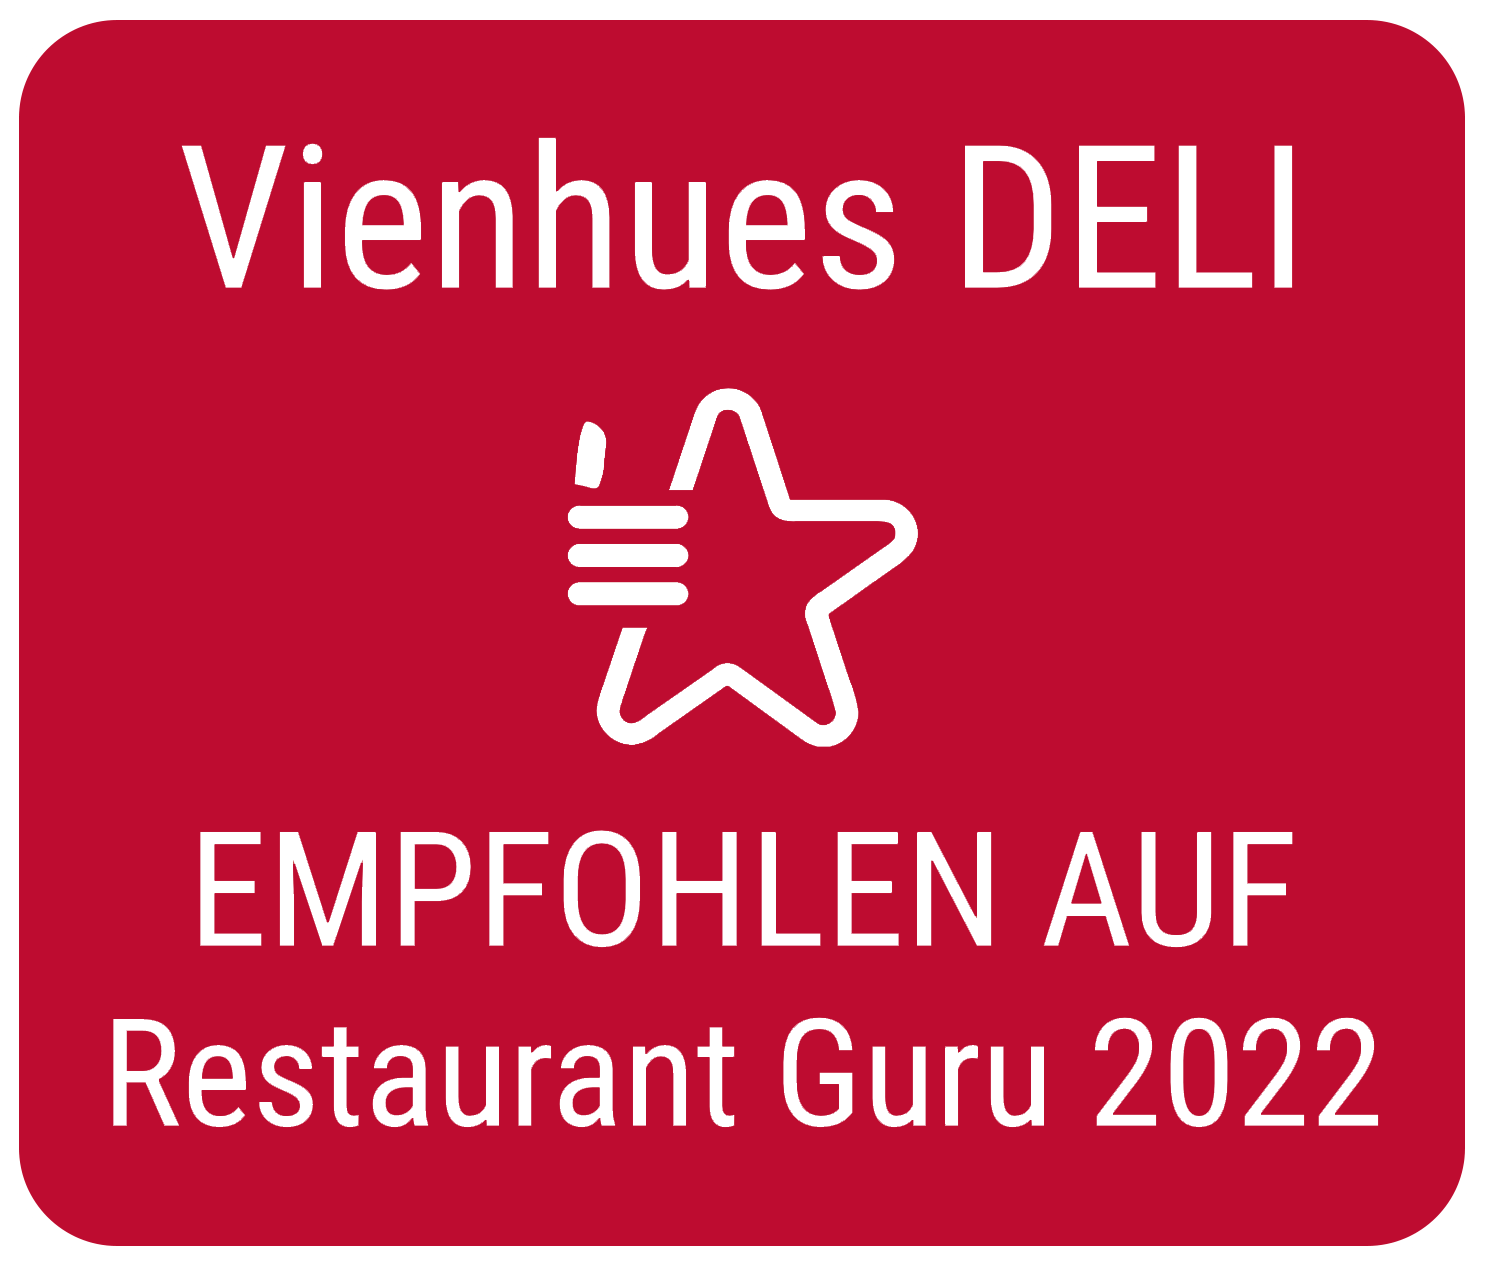 Vienhues DELI: Empfohlen auf Restaurant Guru 2022